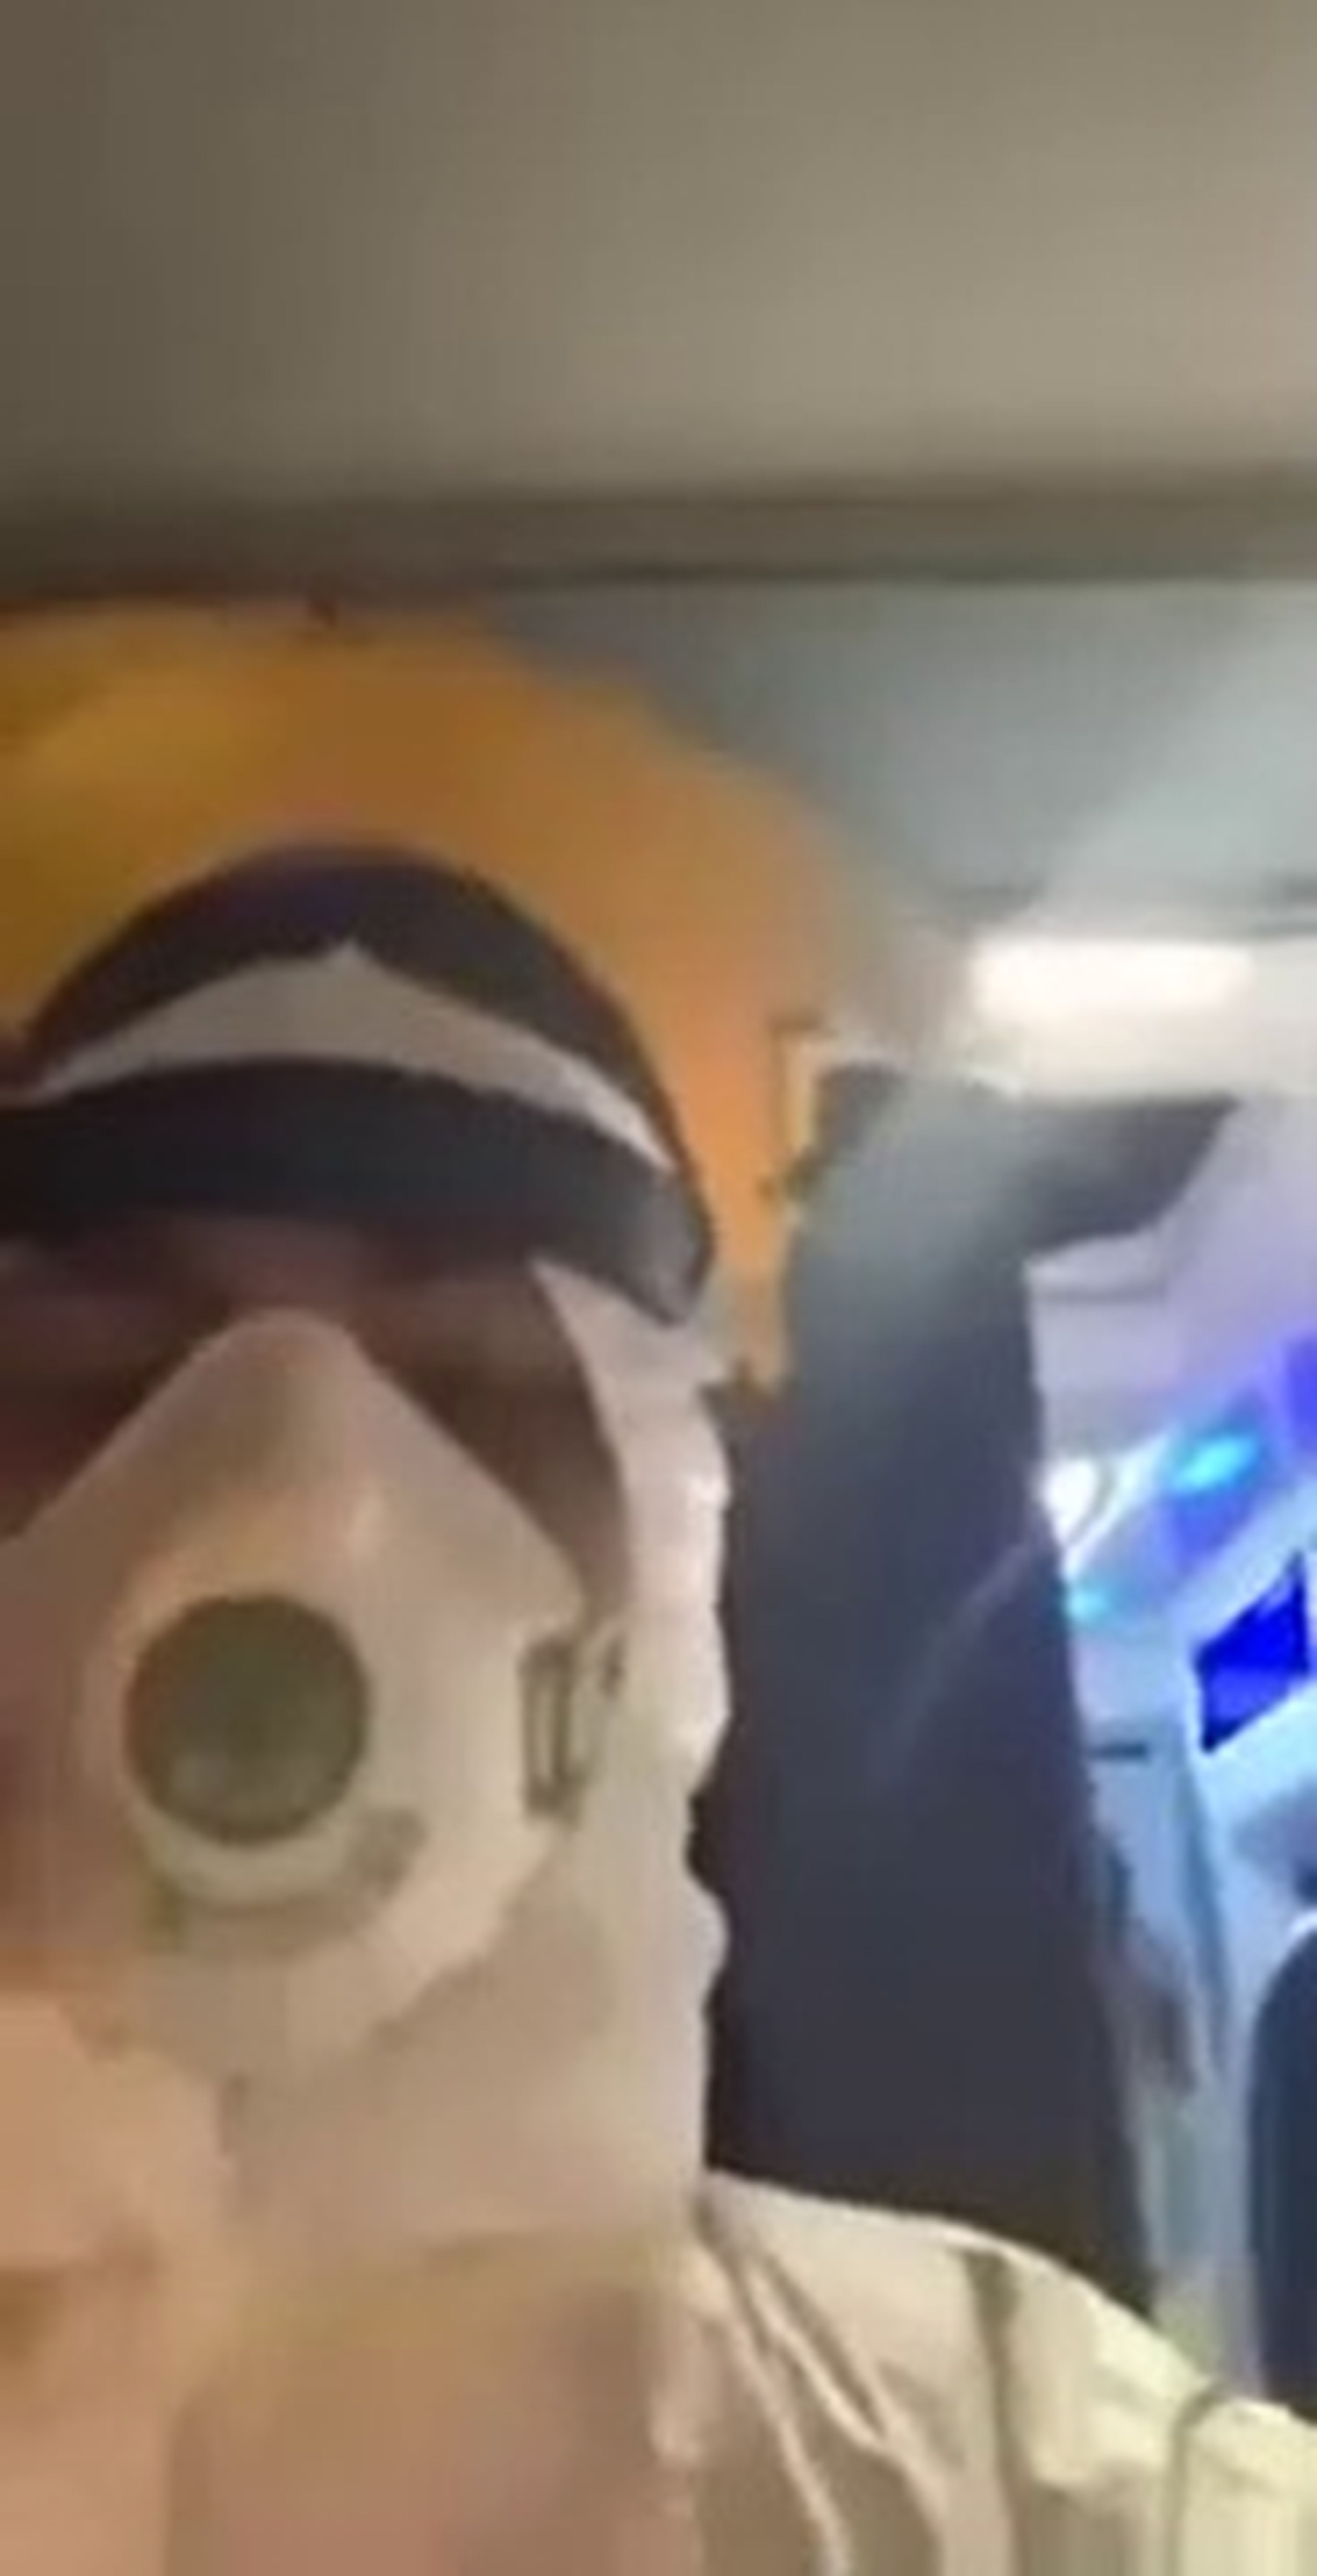 VÍDEO: Los enfermeros de esta ambulancia bailan el 'coronabusters'... ¡qué no falte el humor!